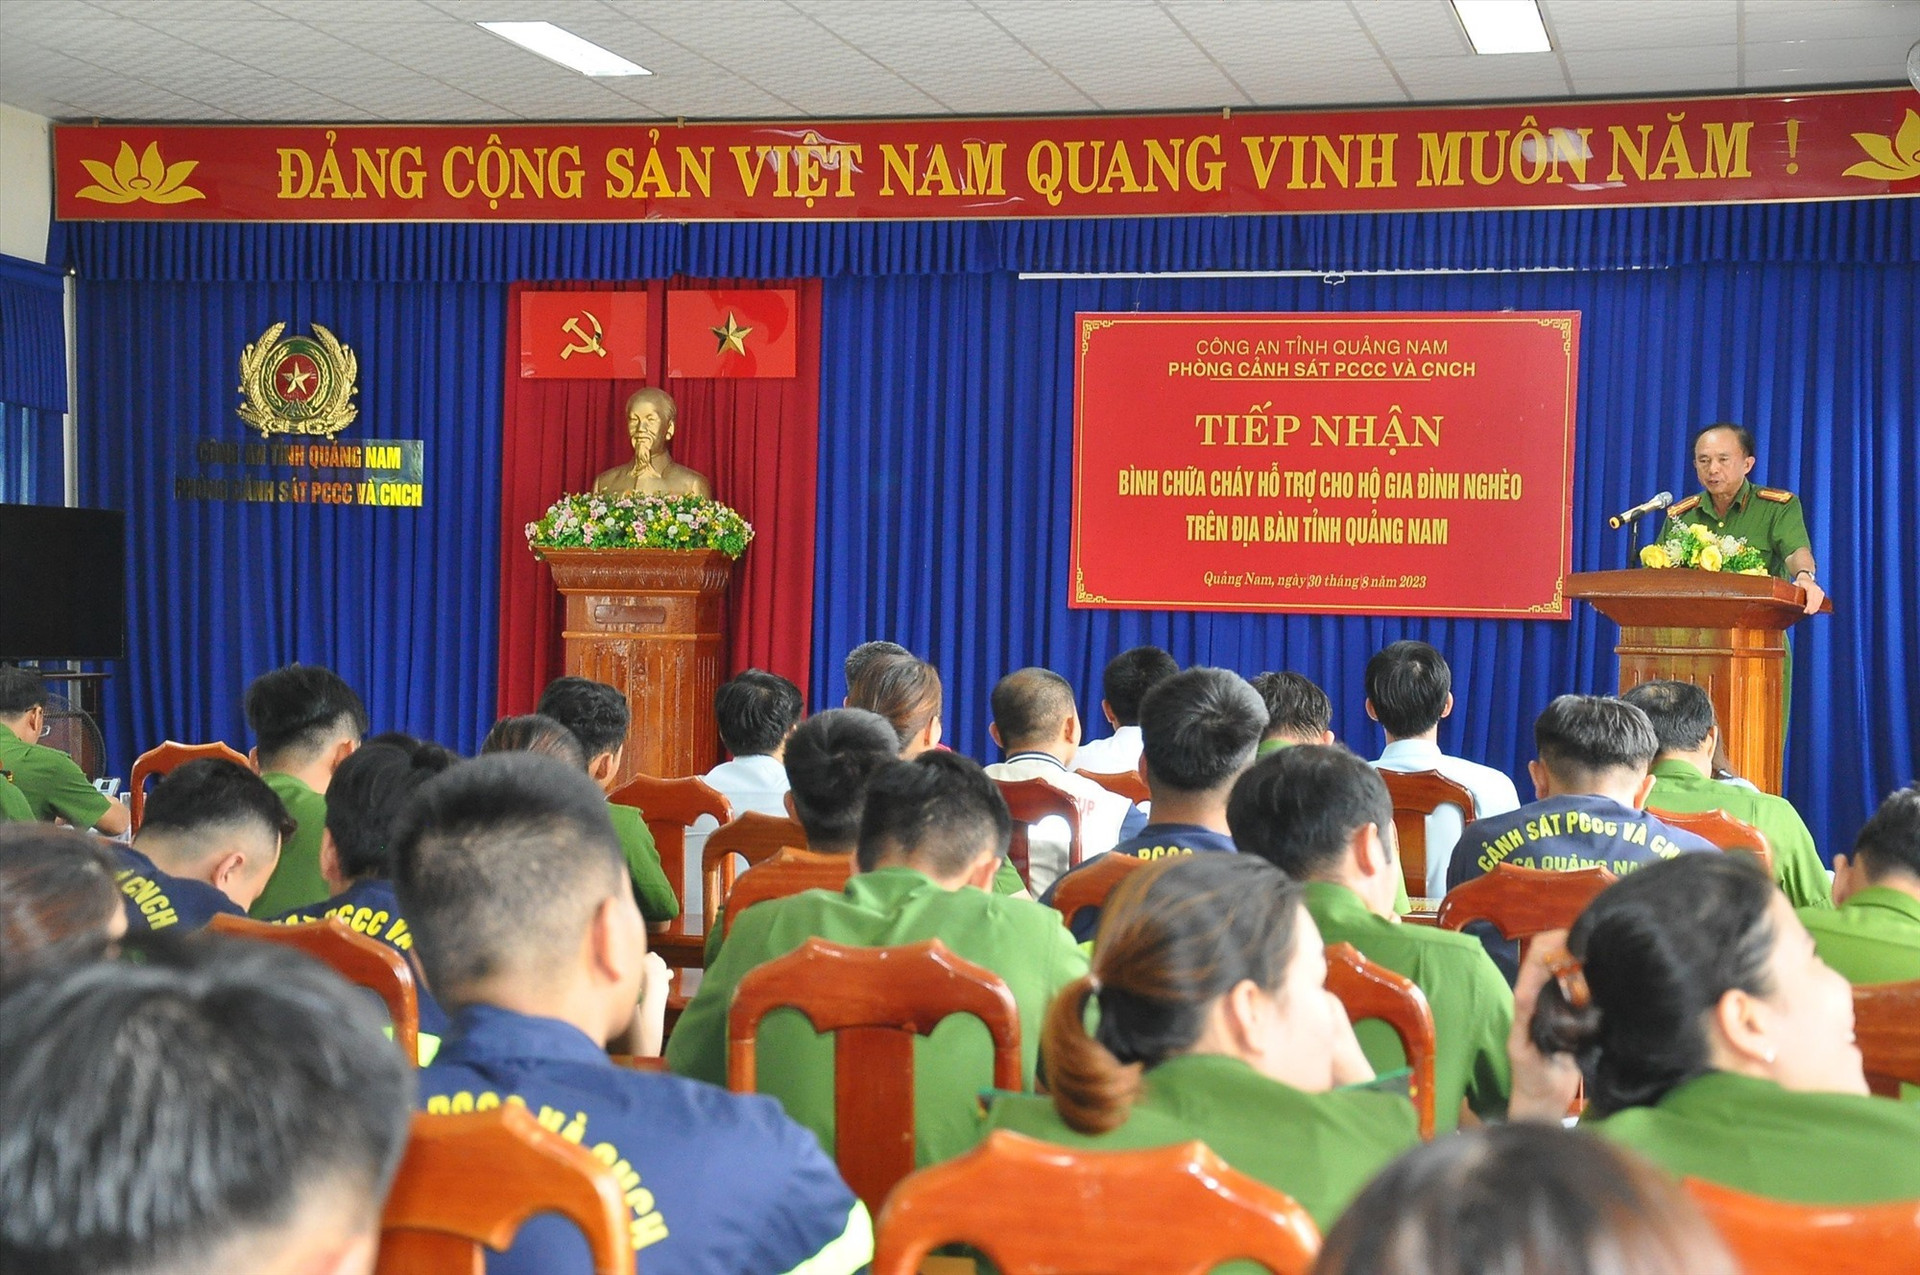 Thượng tá Trần Công Tiết - Trưởng Phòng Cảnh sát PCCC và CNCH cho biết sẽ tiếp tục đẩy mạnh chủ trương xã hội hóa để hỗ trợ bình chữa cháy cho người nghèo. Ảnh: T.C